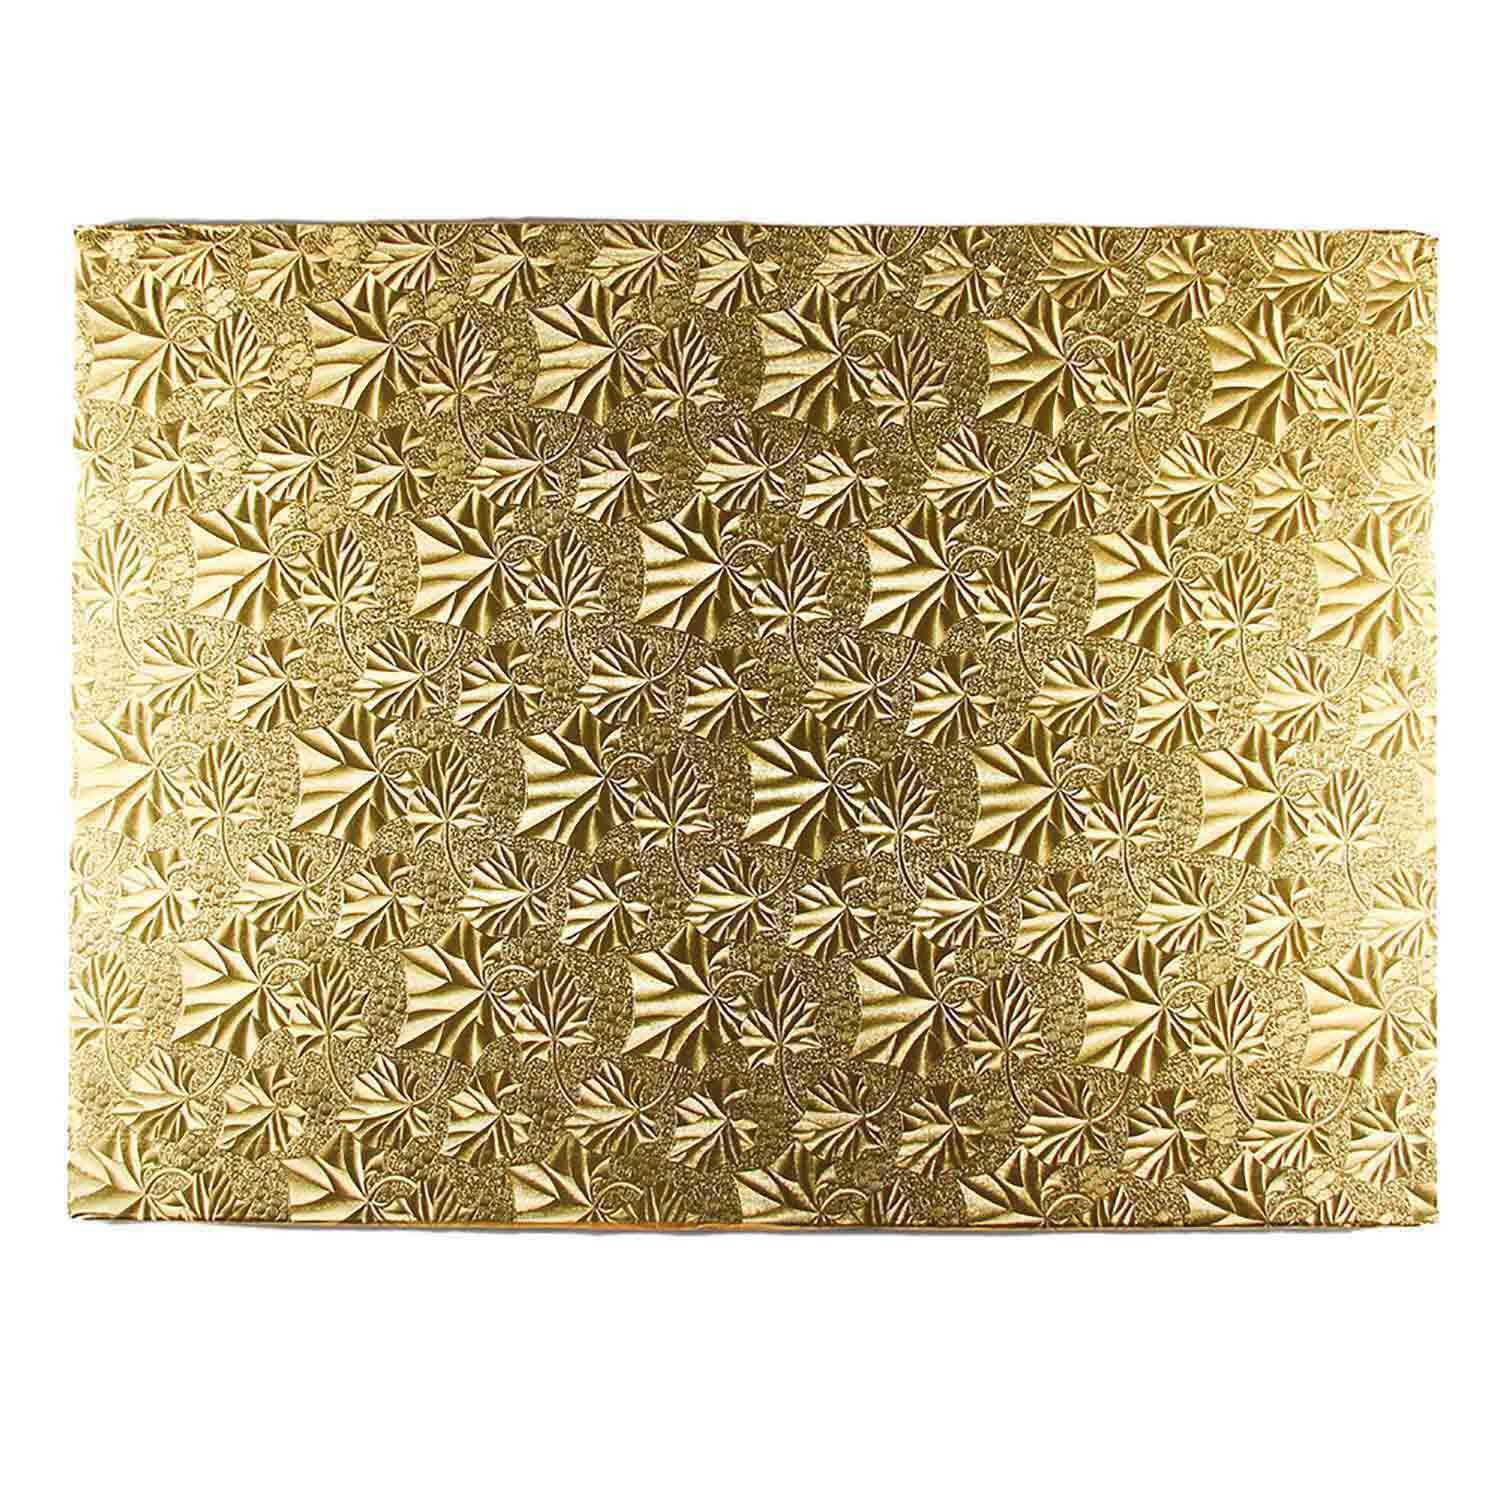 18" x 26" Rectangle Gold Foil Full Sheet Cake Drum